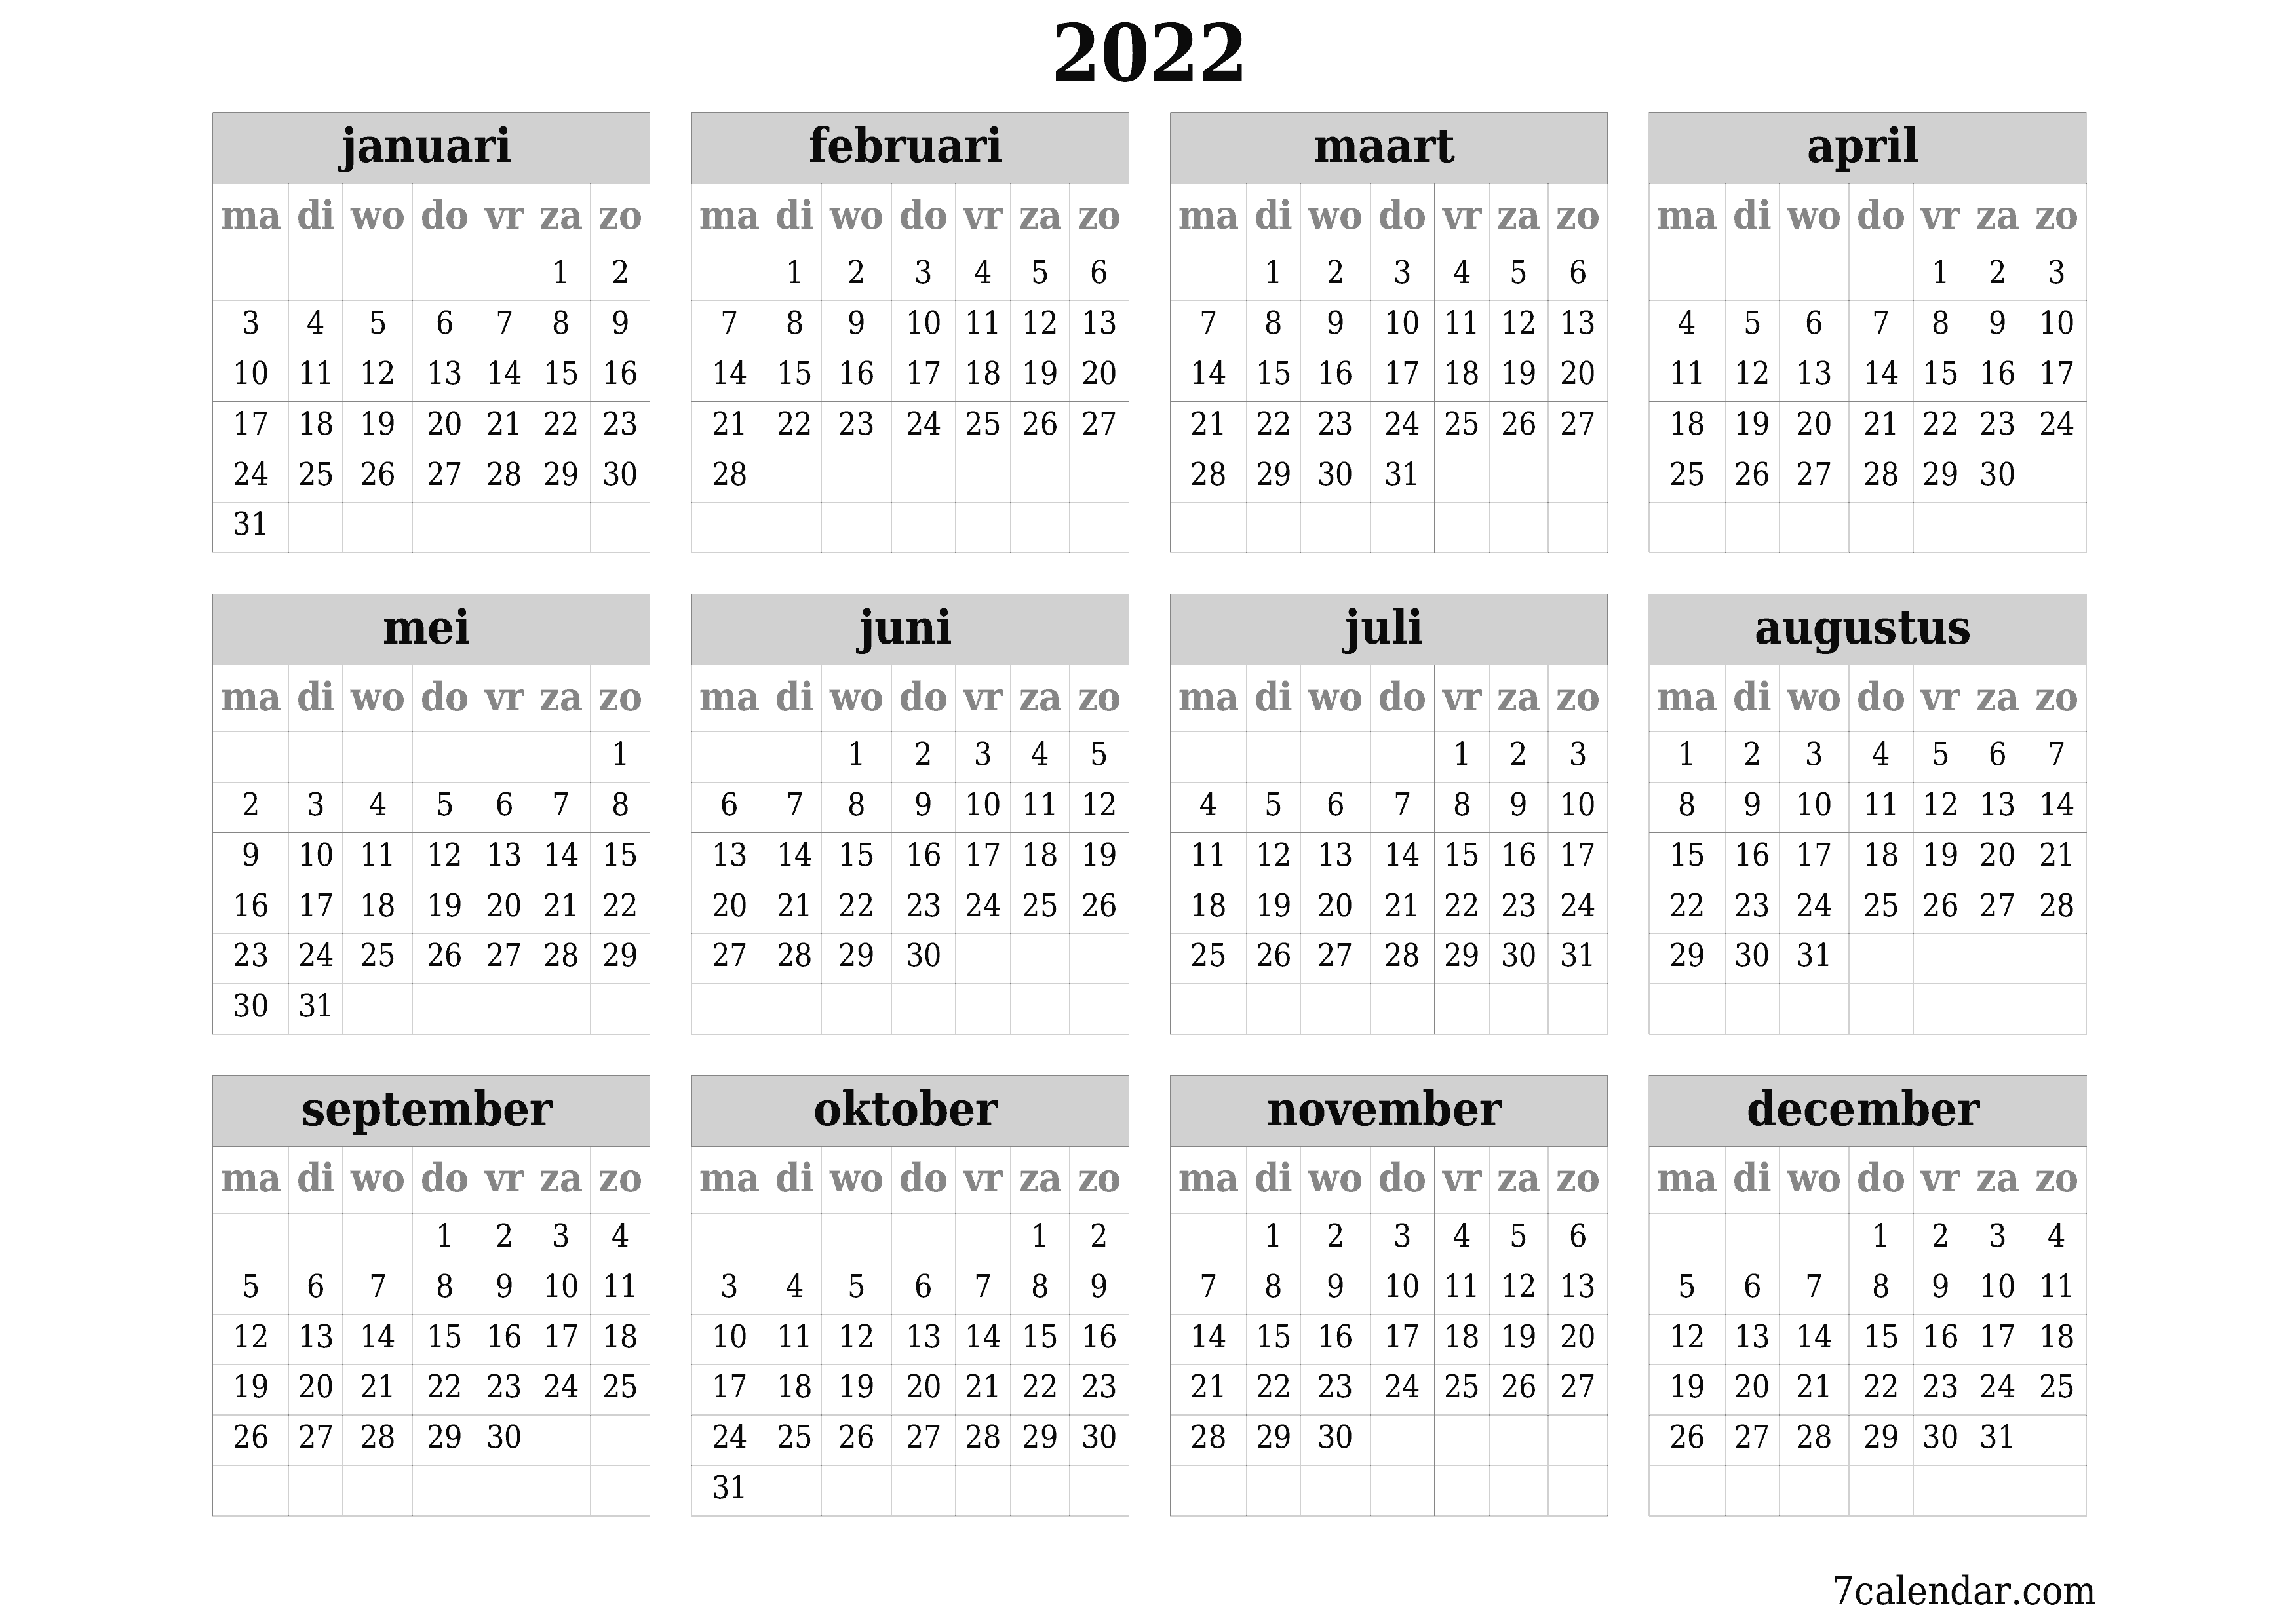 Lege jaarplanningskalender voor het jaar 2022 met notities, opslaan en afdrukken naar pdf PNG Dutch